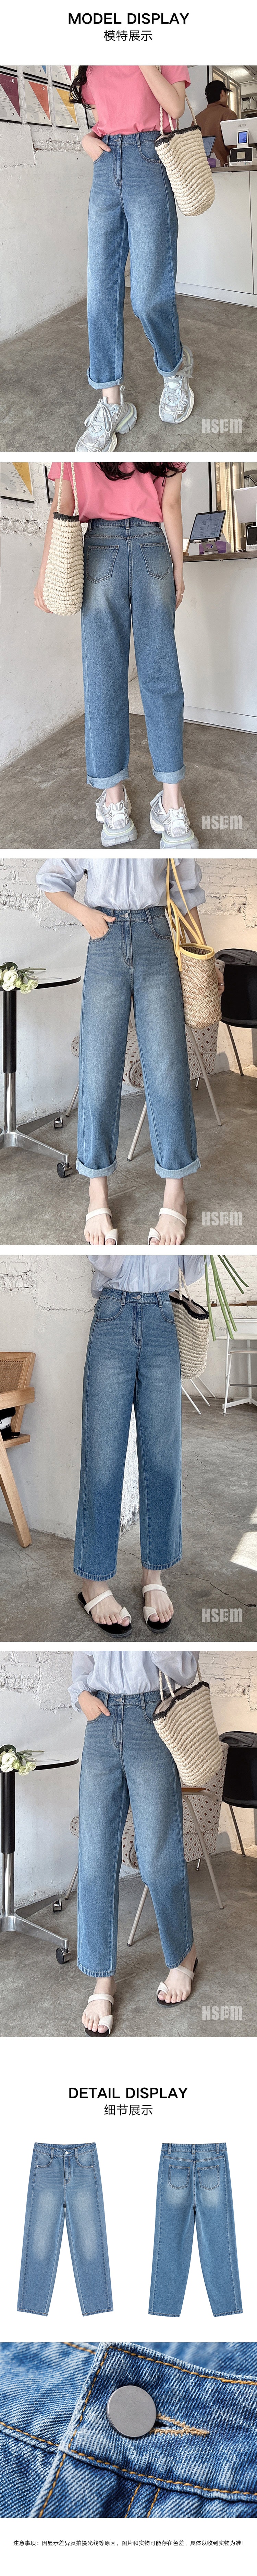 【中国直邮】HSPM 新款简约高腰复古直筒牛仔裤 蓝色 S